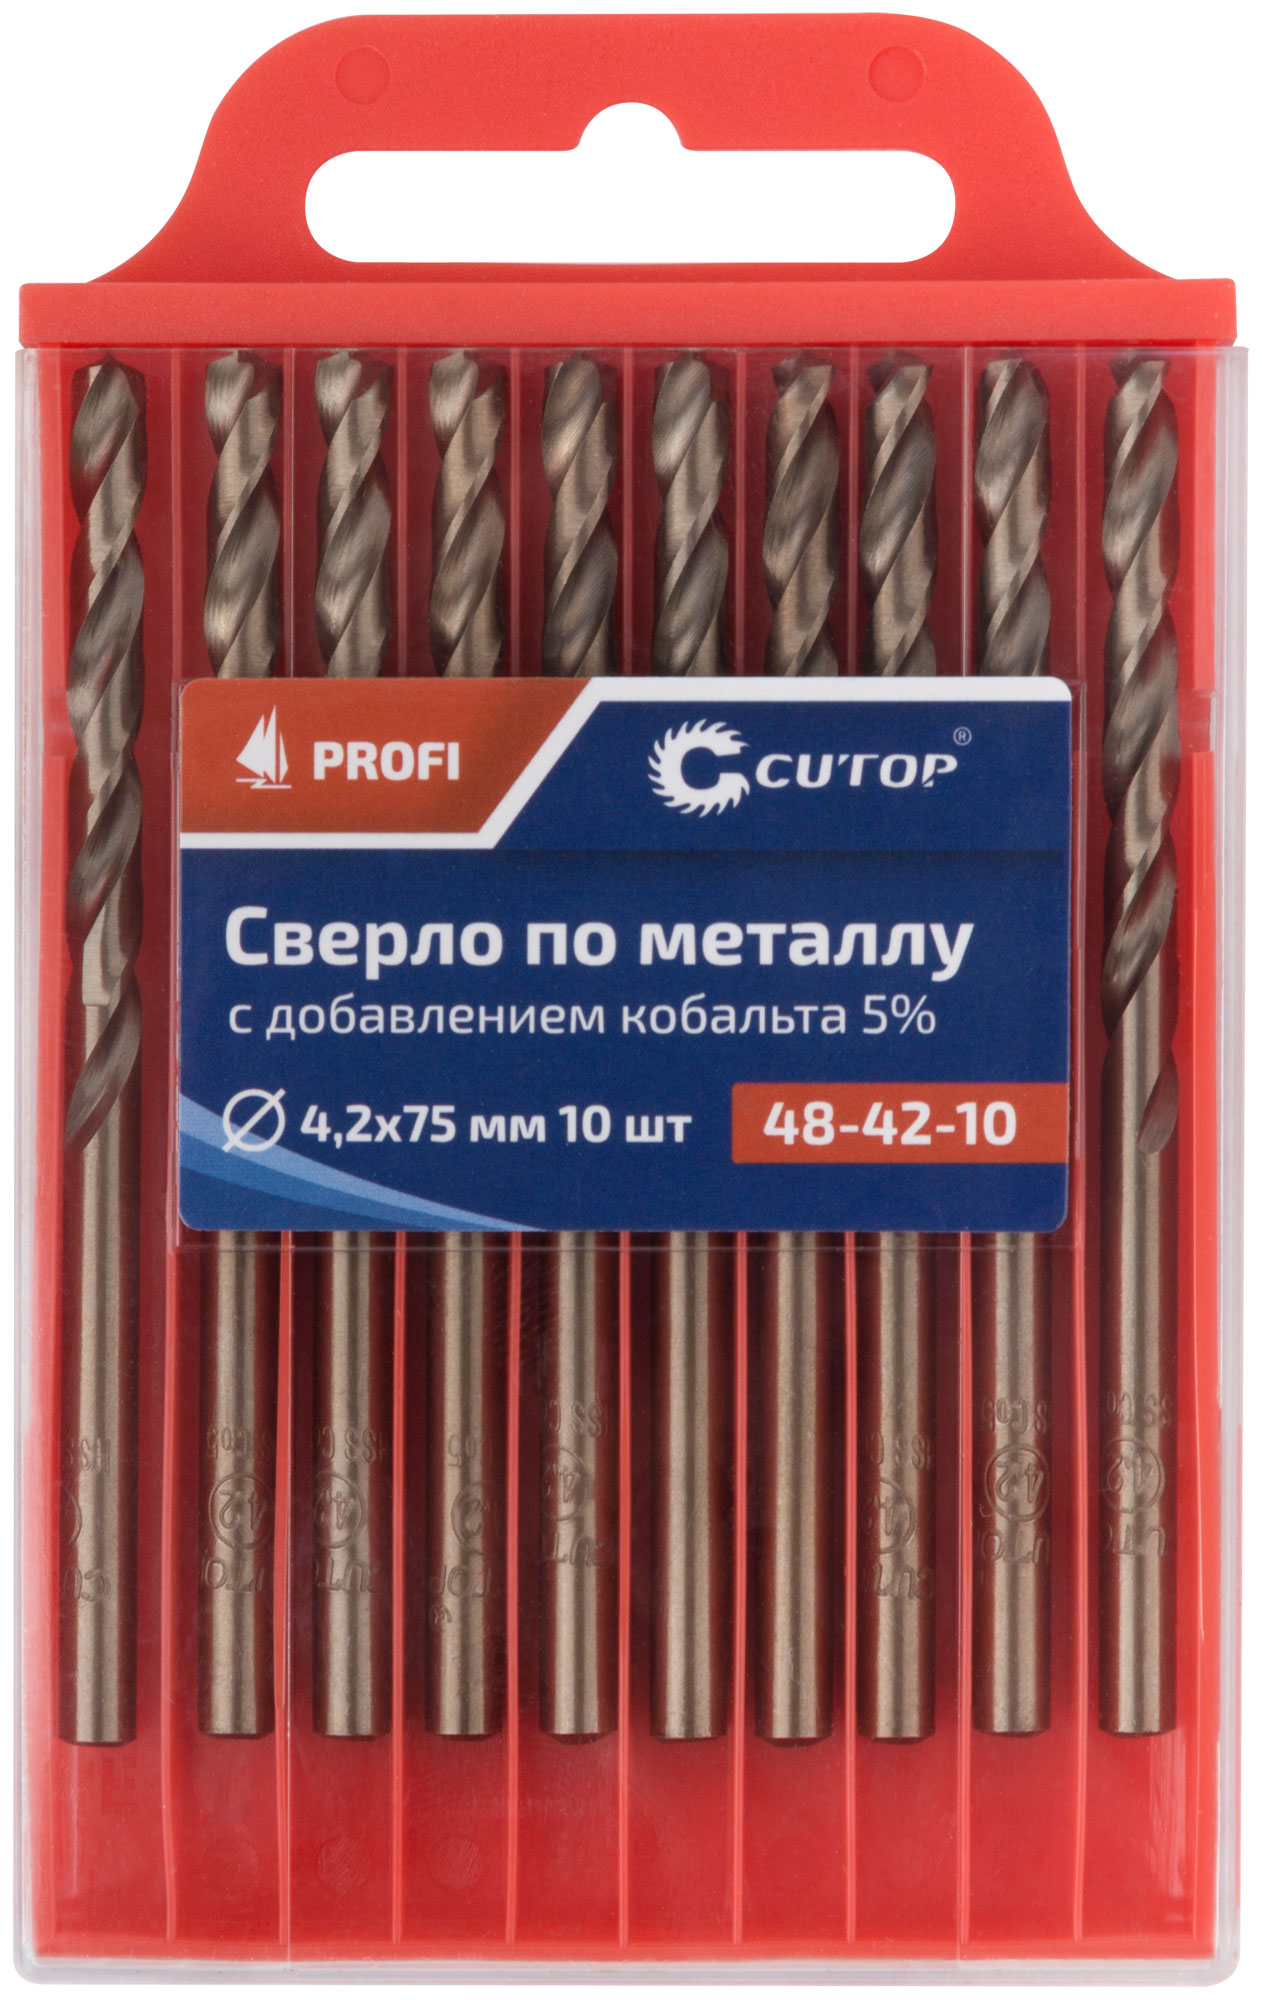 Сверло по металлу Cutop Profi с кобальтом 5%, 4,2 x 75 мм (10 шт)